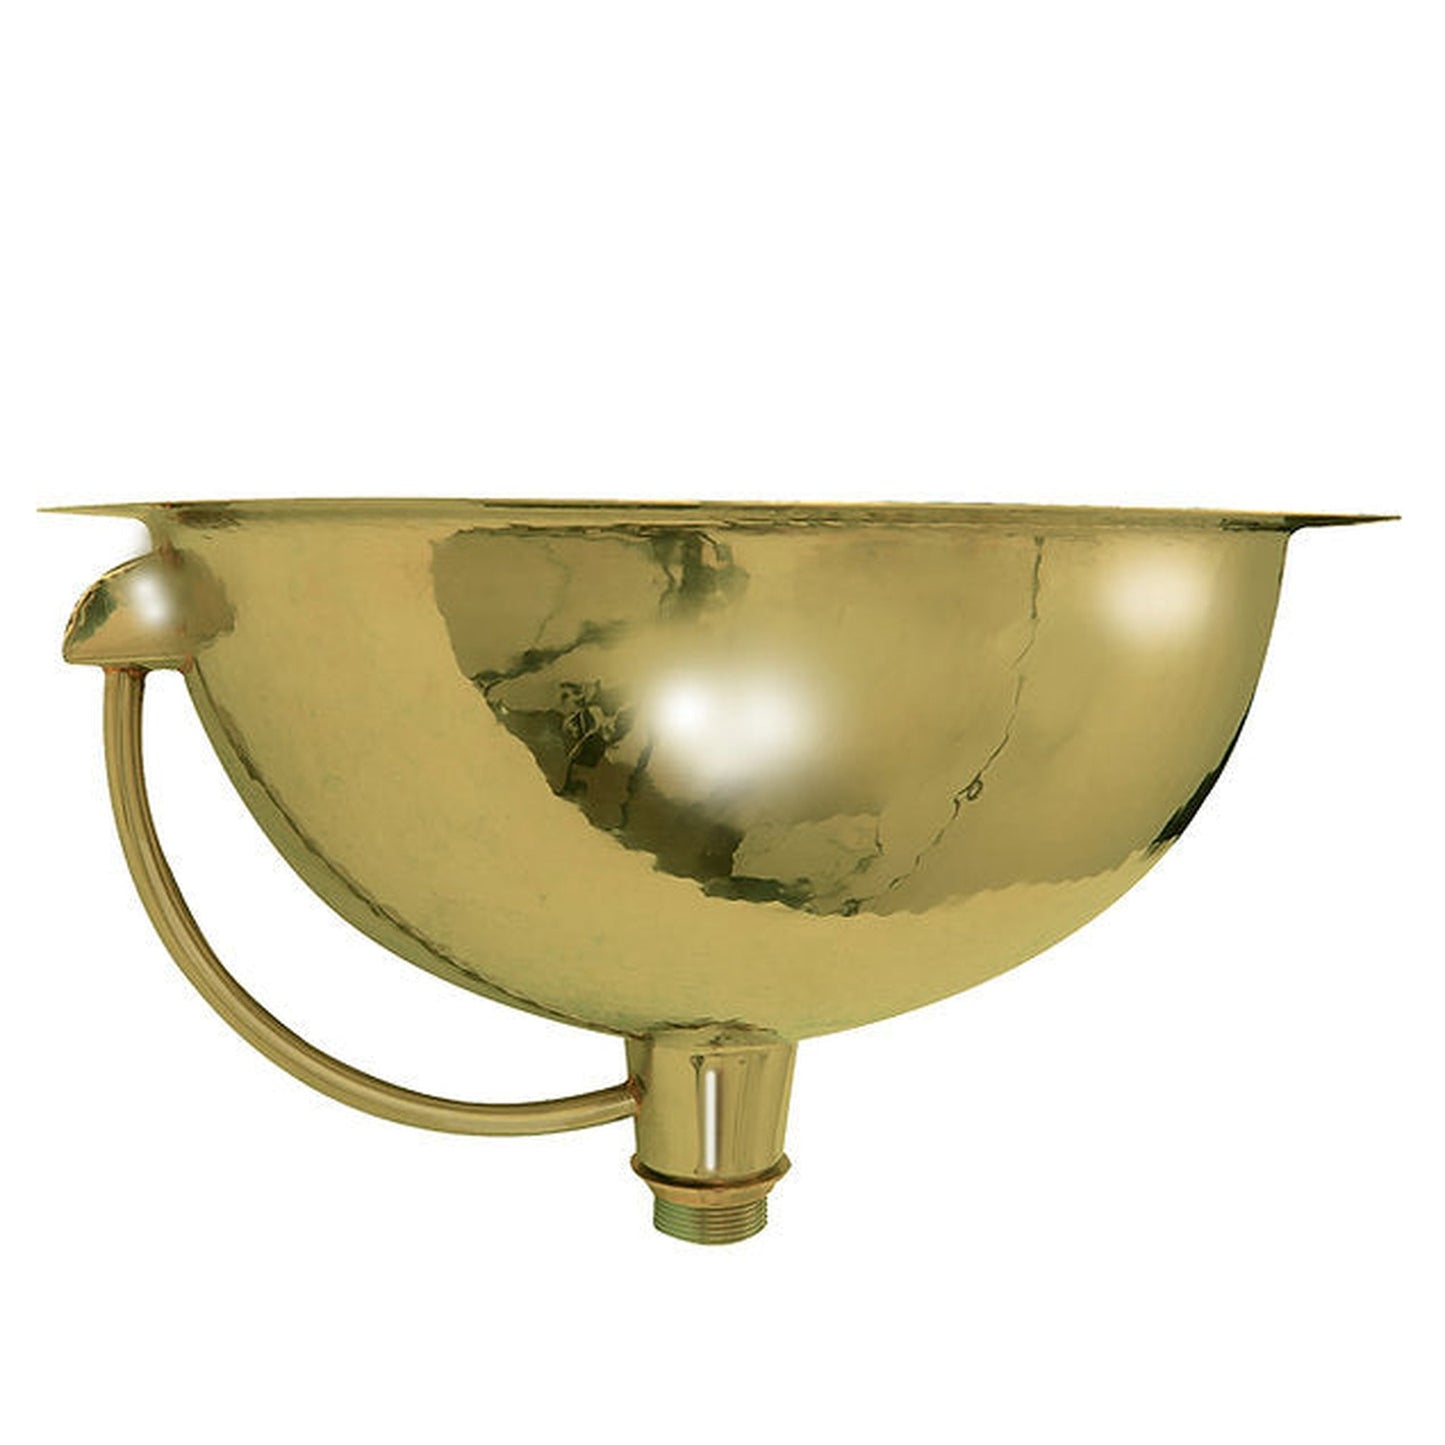 Nantucket Sinks Brightwork Home 17" Round Hand Hammered Polished Brass Undermount Sink With Overflow